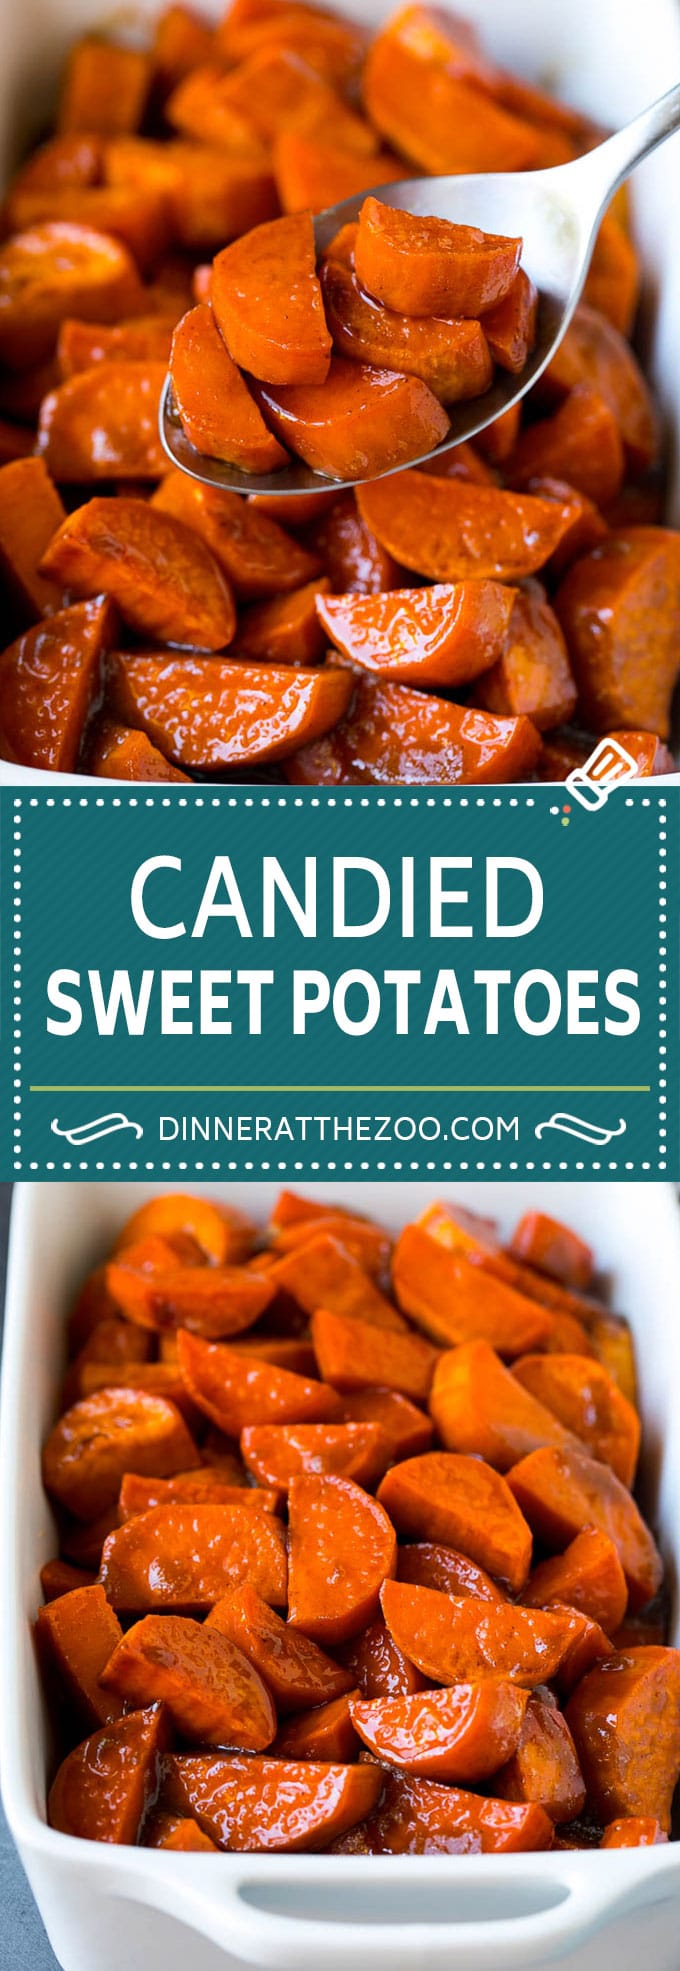 Candied Sweet Potatoes Recipe | Candied Yams #sweetpotatoes #yams #sidedish #dinner #fall #thanksgiving #dinneratthezoo